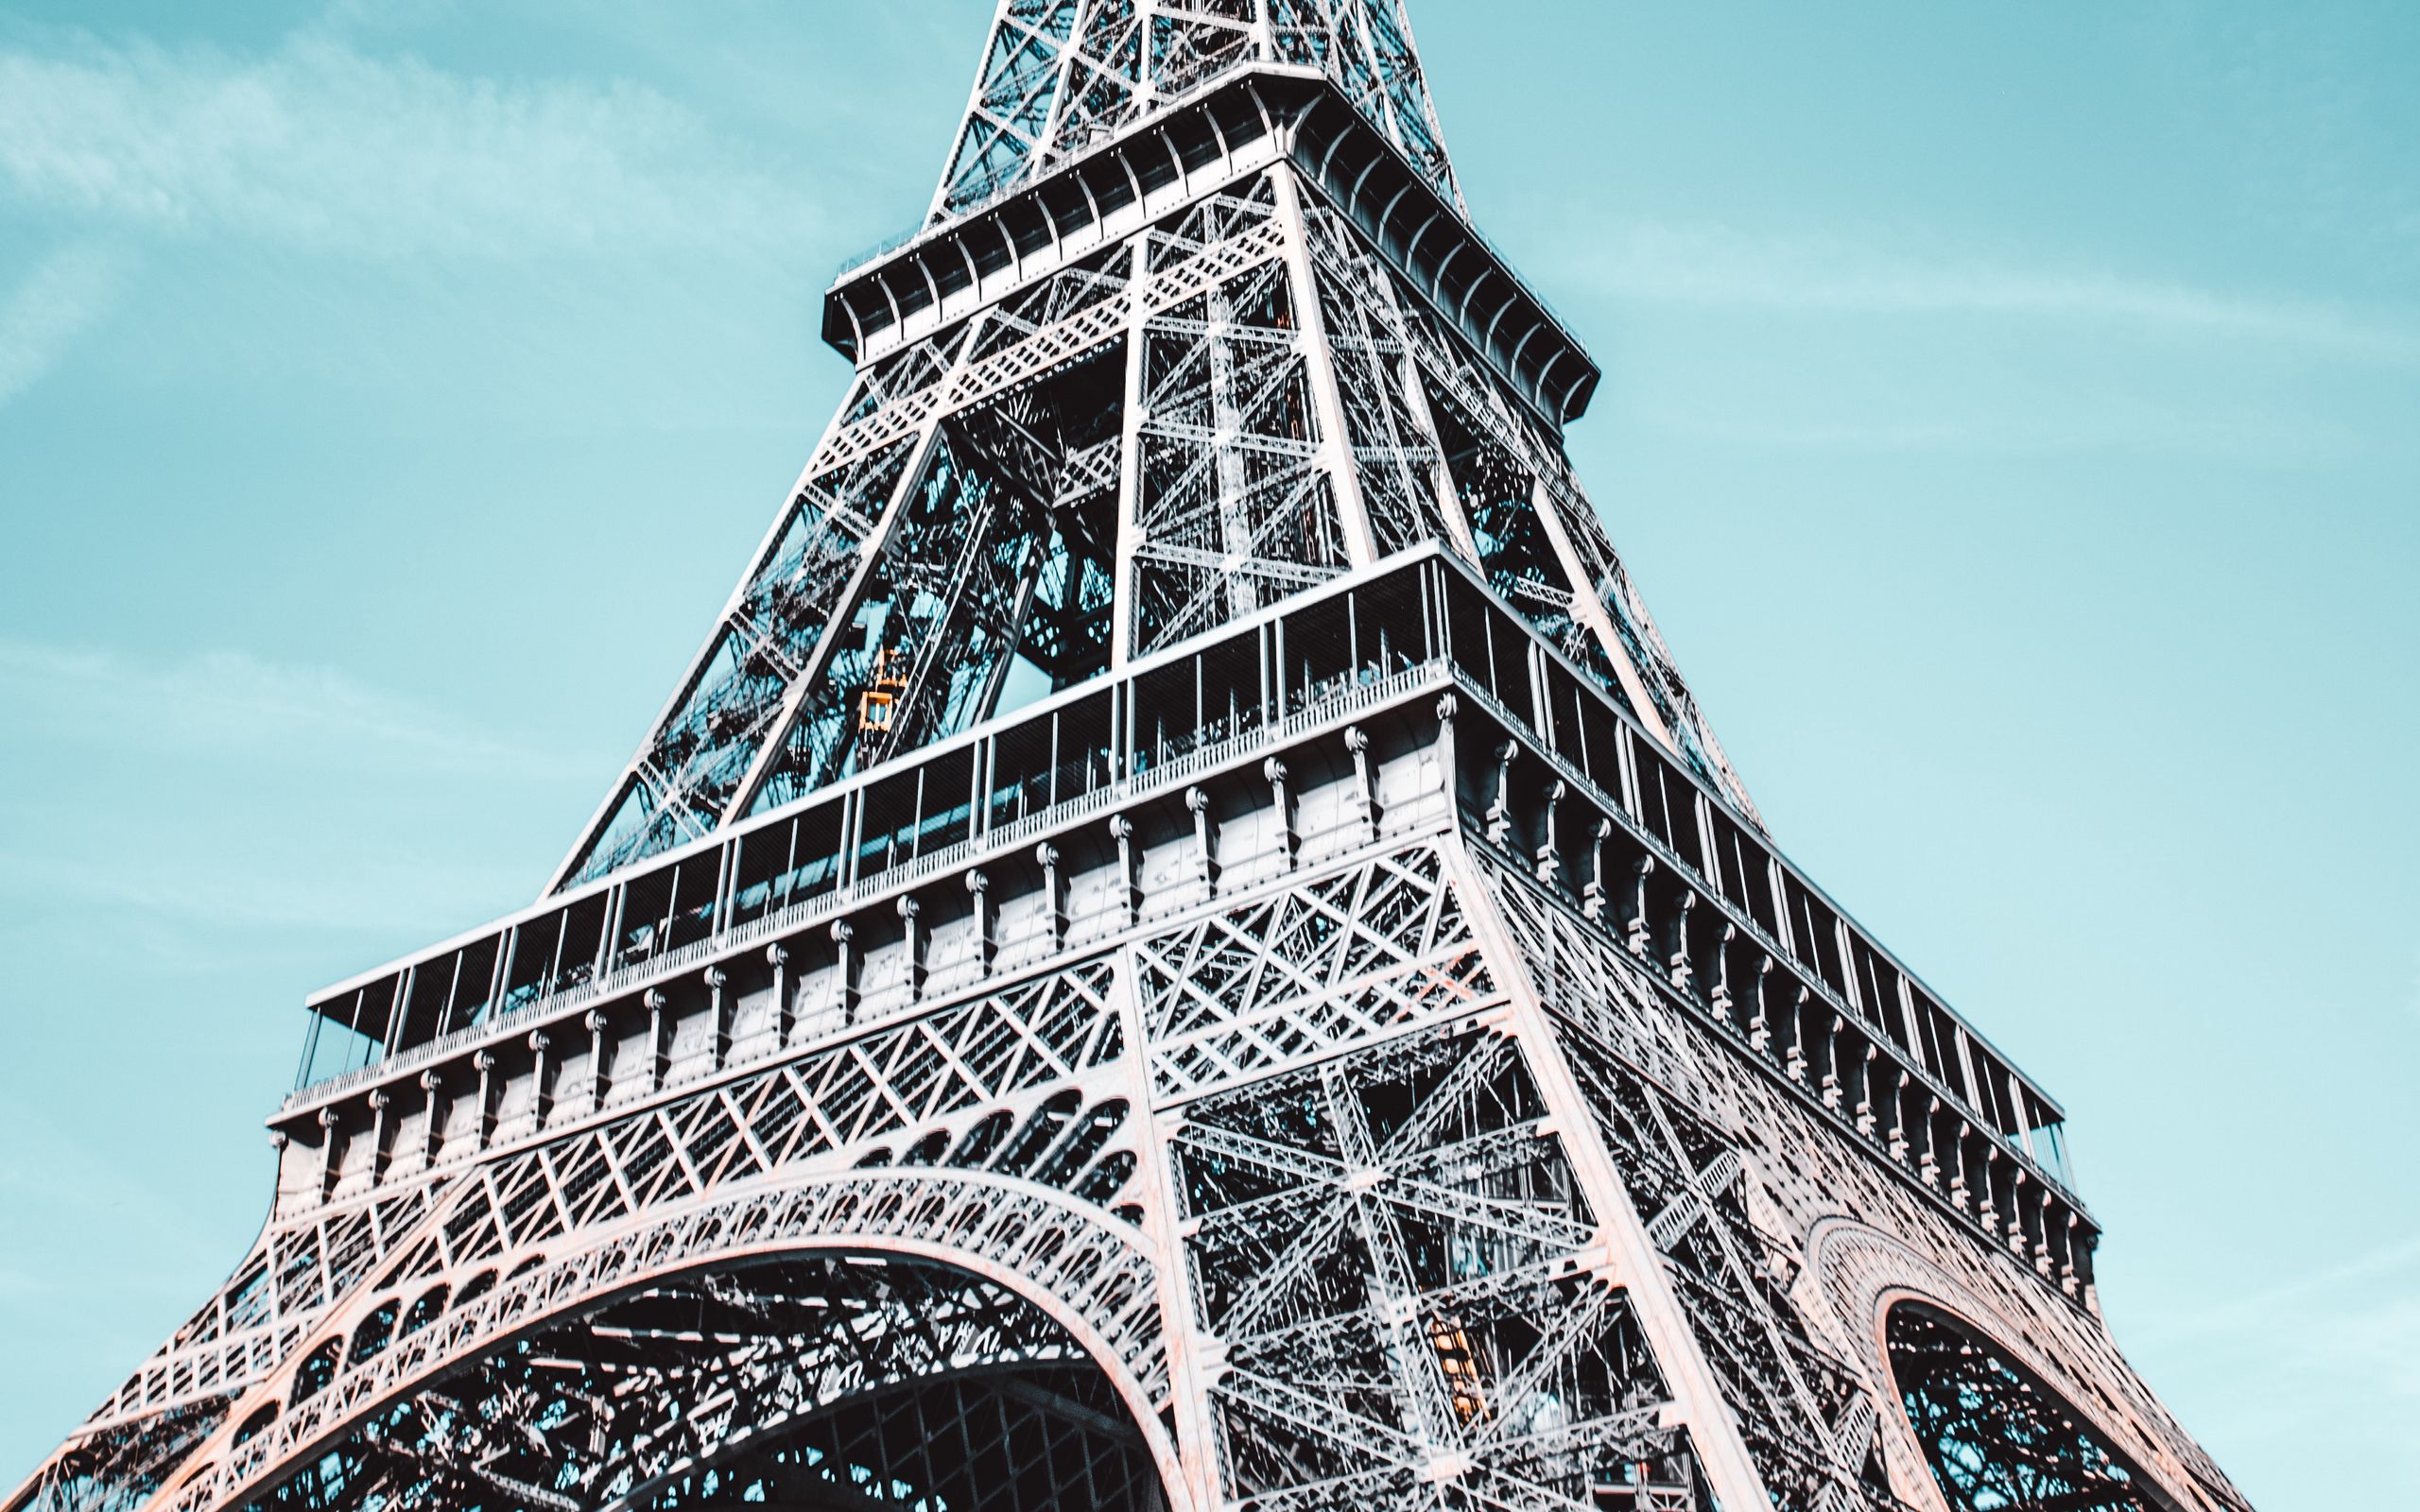 Download Wallpaper 2560x1600 Eiffel Tower Architecture Paris France